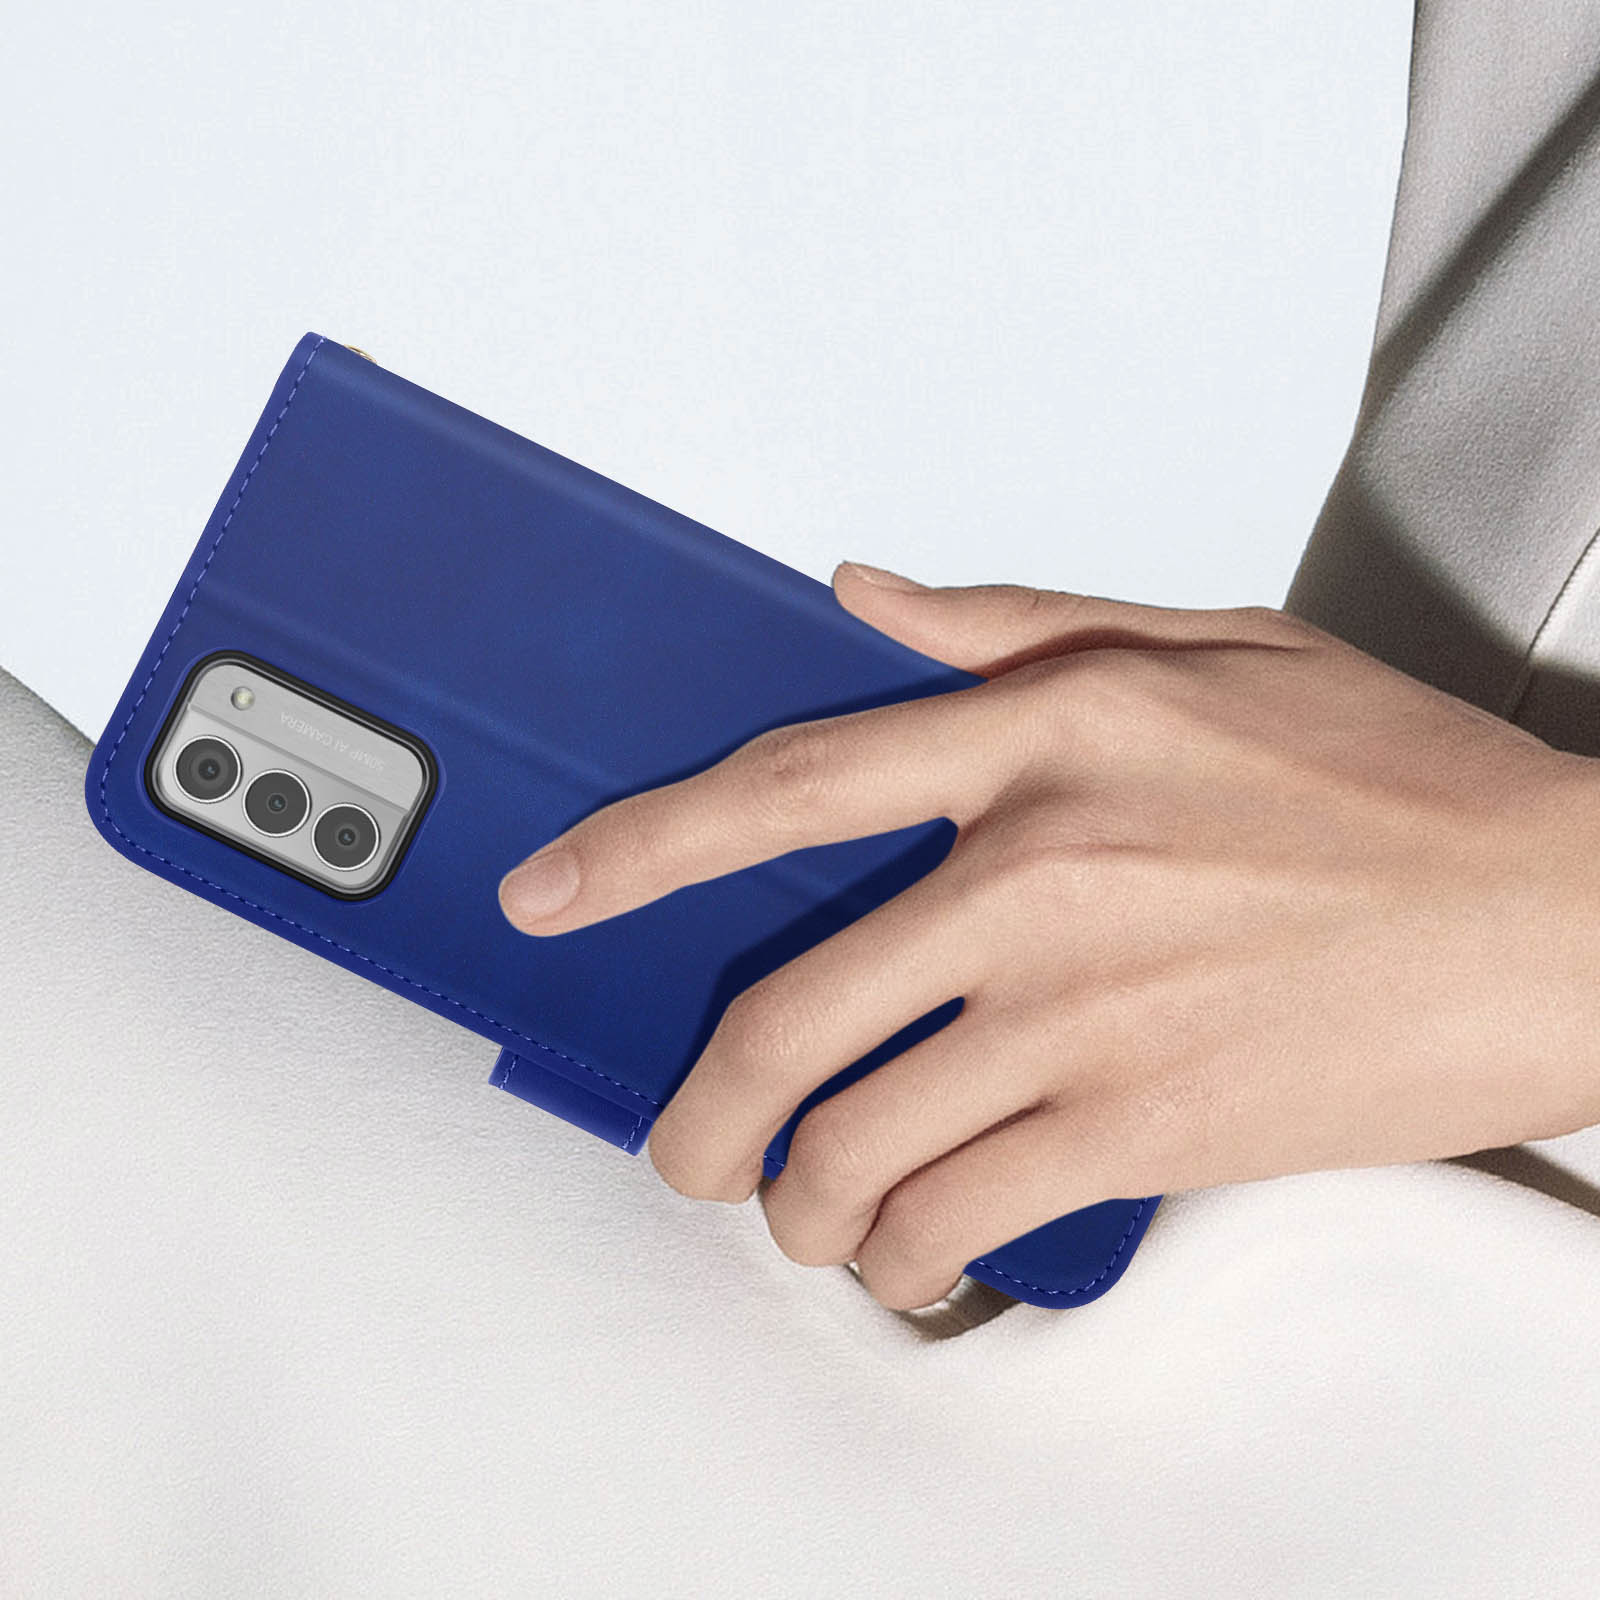 AVIZAR Sleek Blau Bookcover, G42 5G, Series, Nokia Cover Nokia